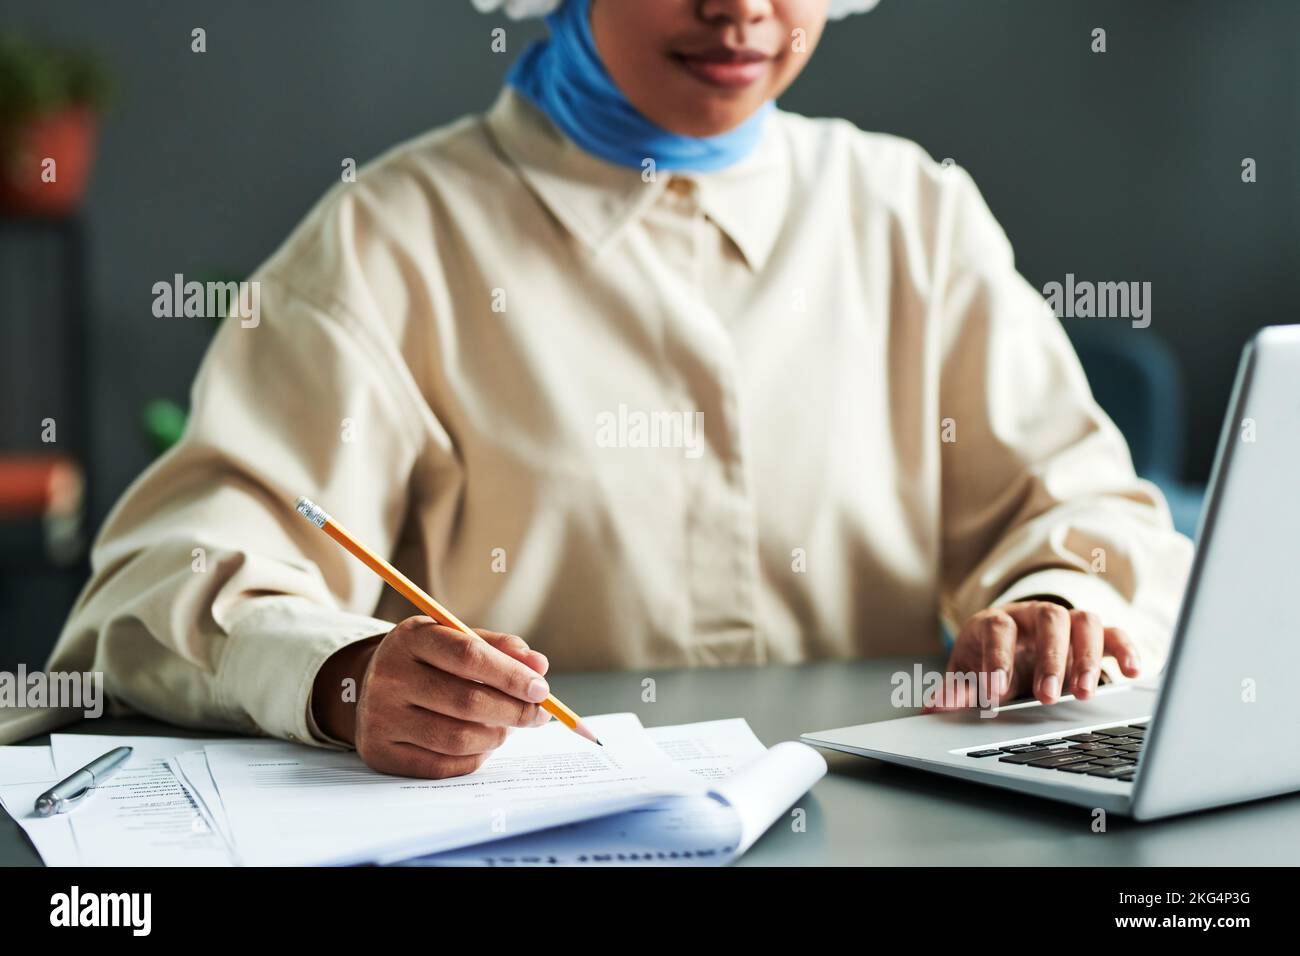 Selektiver Fokus auf die Hand eines jungen Studenten mit Bleistift über Papier mit Grammatiktest, der während des Online-Unterrichts vor dem Laptop sitzt Stockfoto